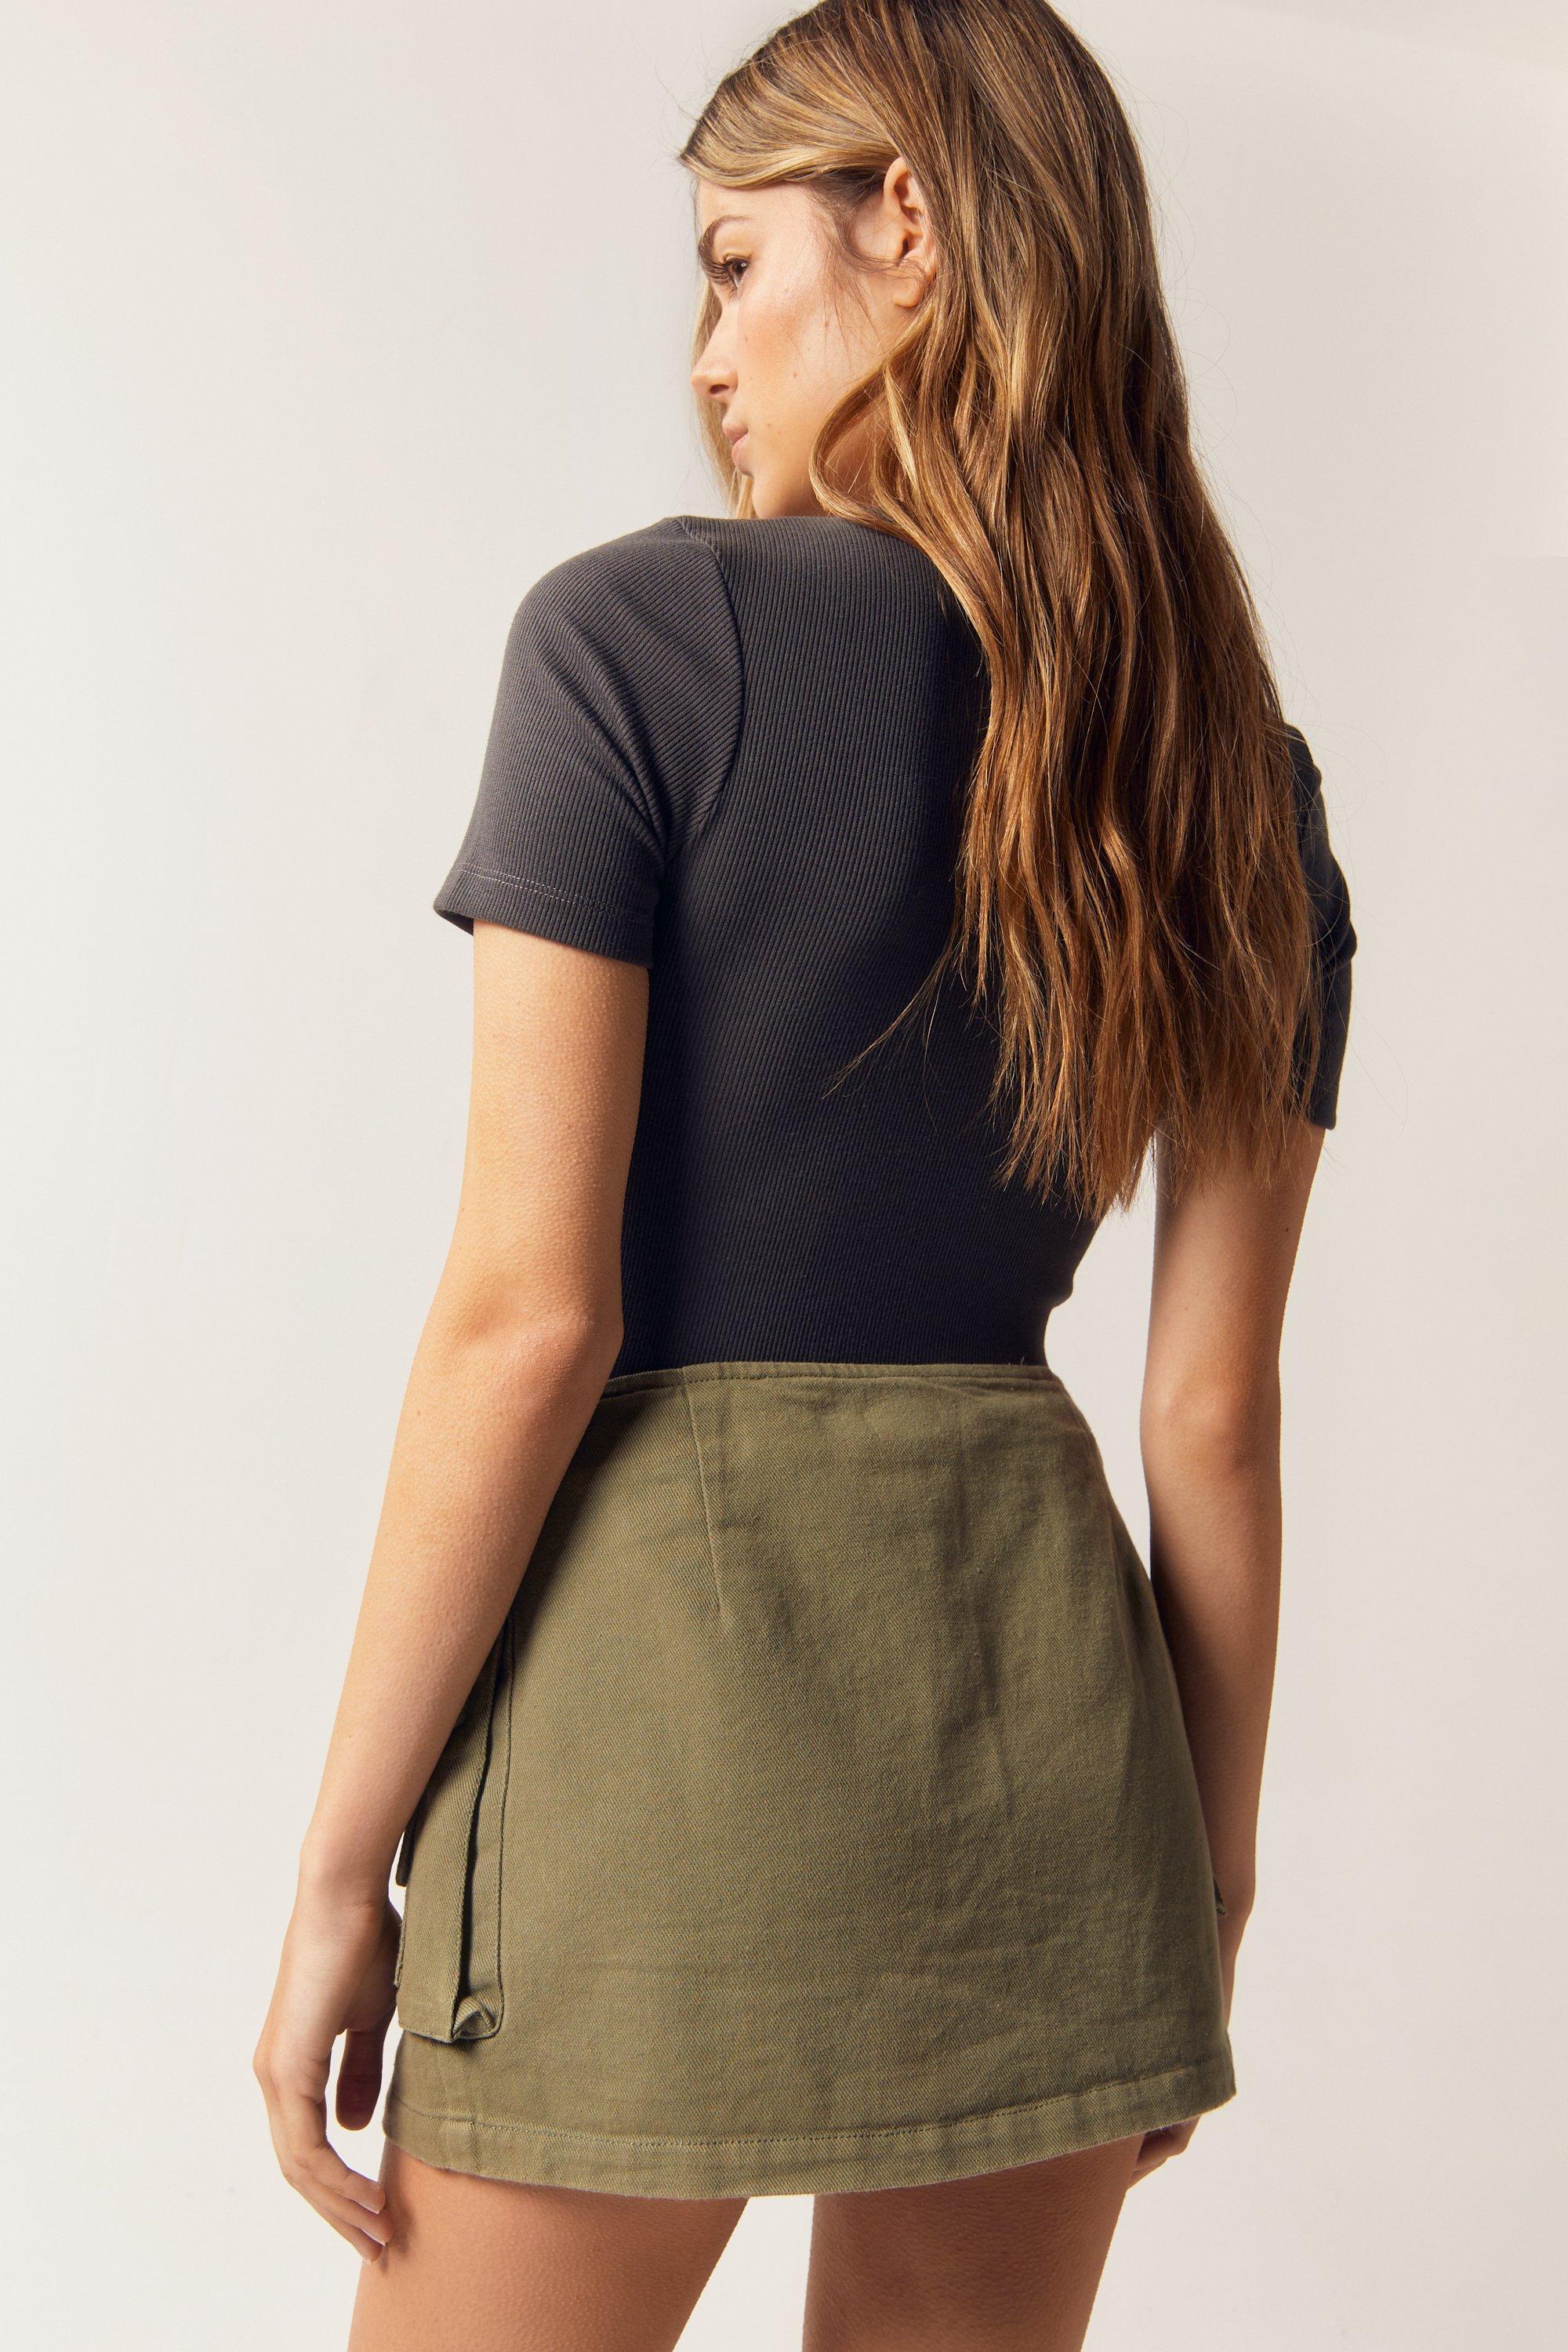 Modern Femme Olive Green Denim Mini Skirt